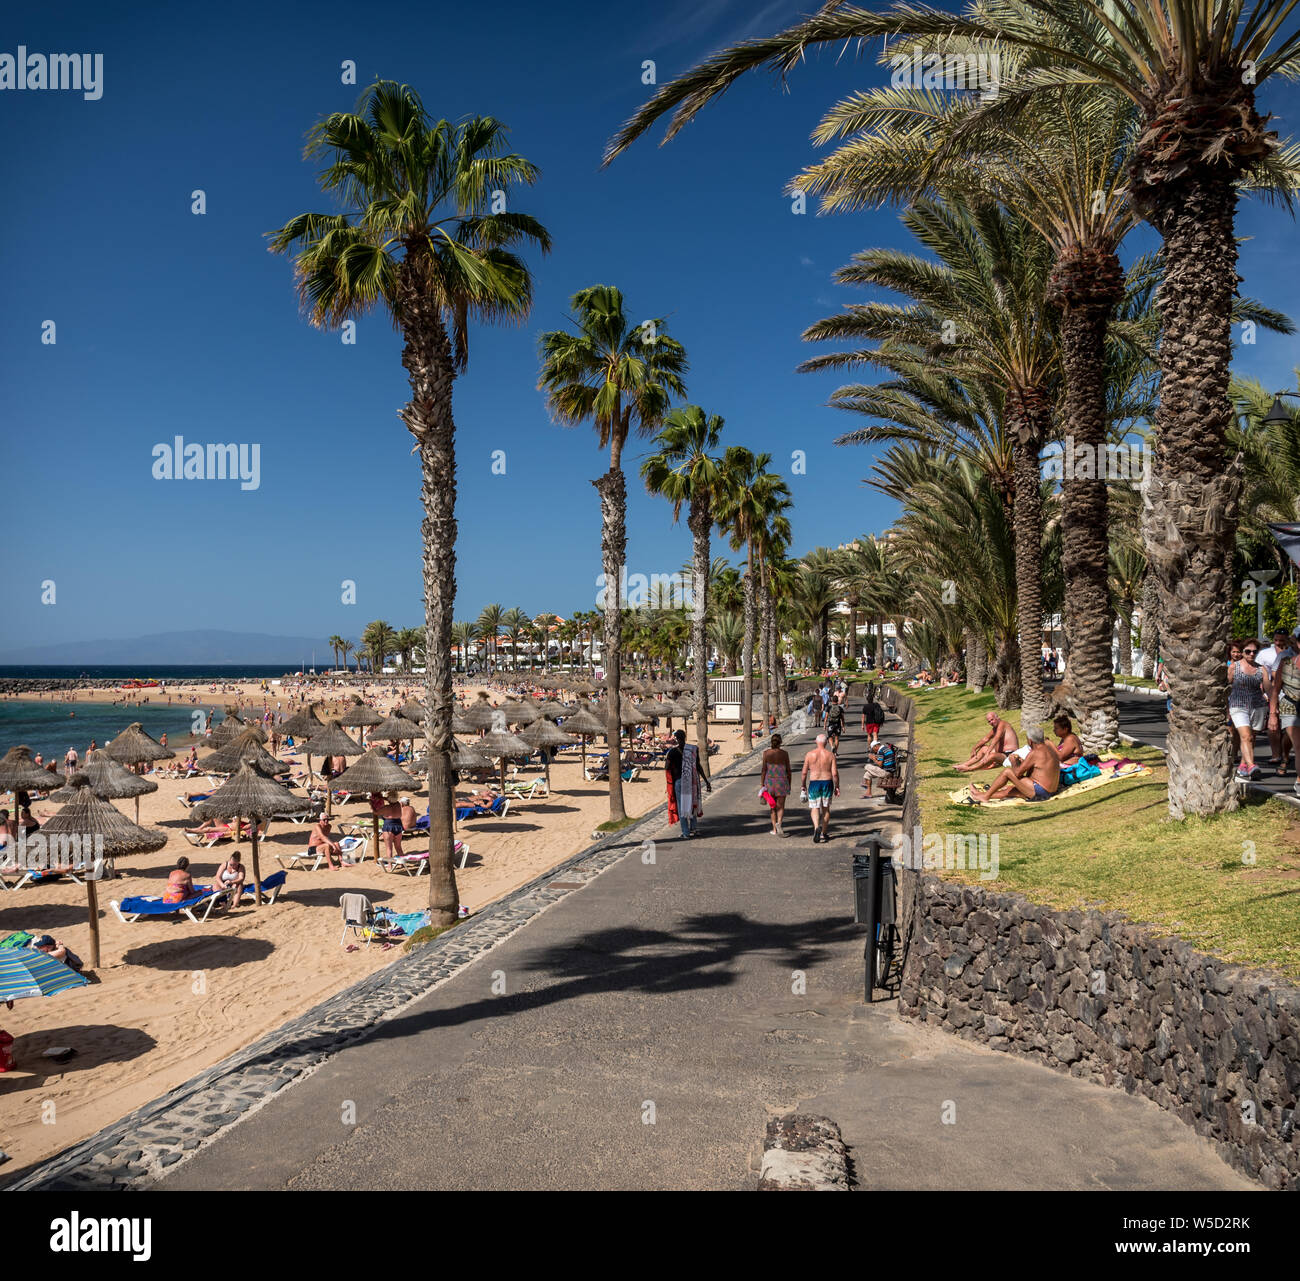 Playa camison playa e imágenes de alta resolución Alamy